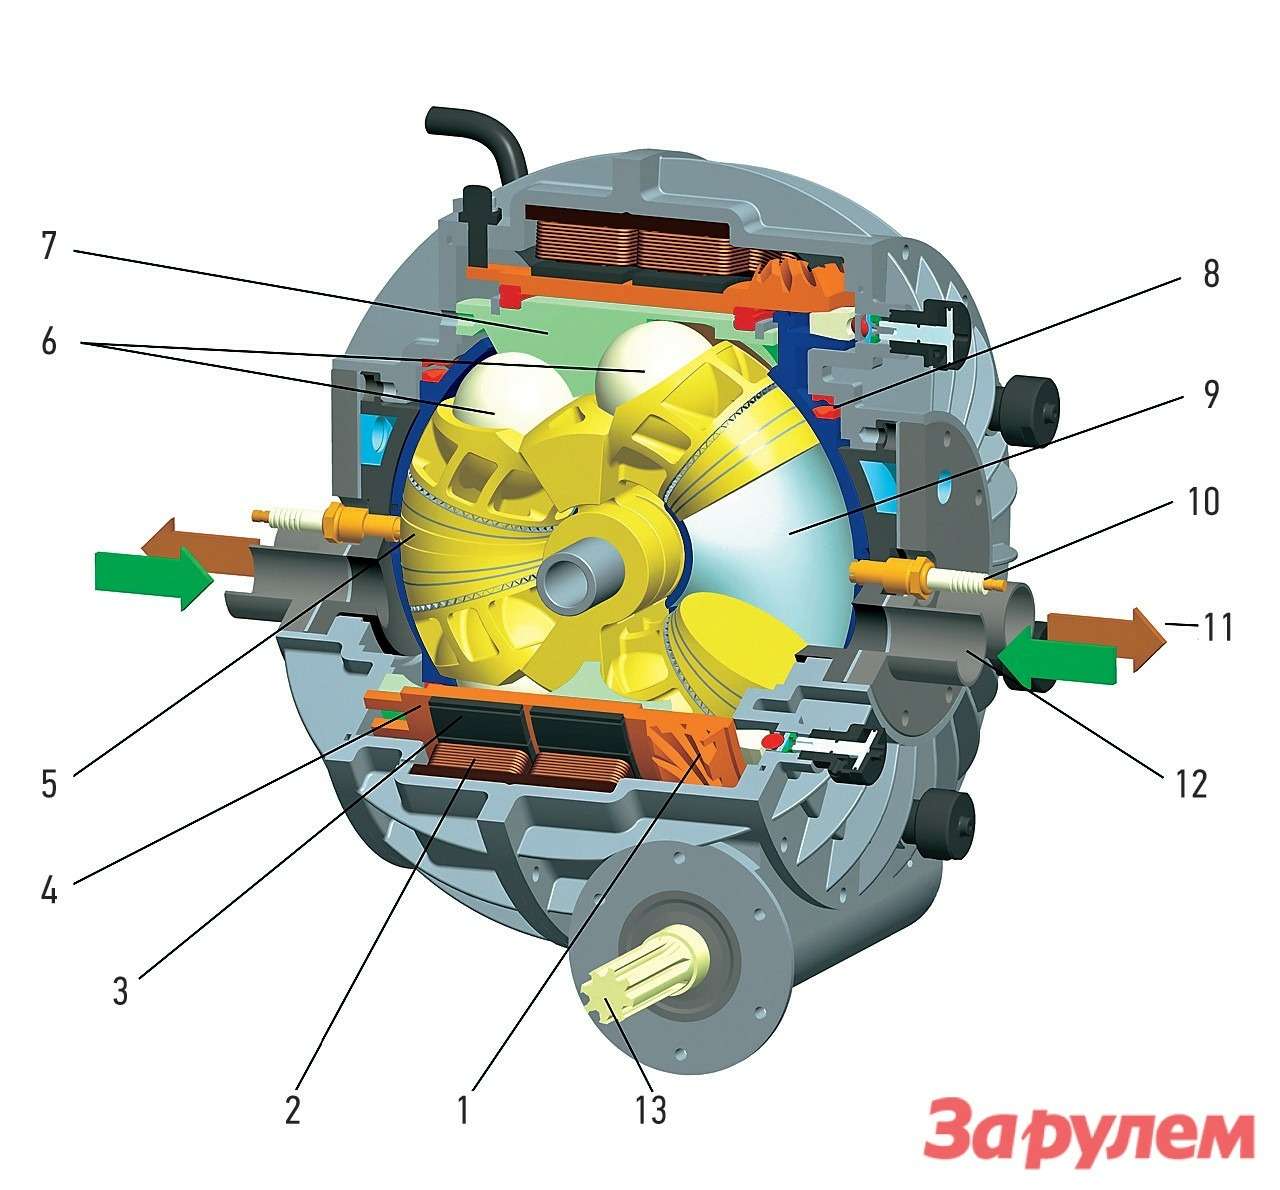 Устройство шарового двигателя со встроенным электромотором: 1 — приводная шестерня; 2 — статор электромотора; 3 — постоянные магниты; 4 — ротор электро- мотора; 5 — камера сгорания 1; 6 — шаровые направляющие поршней; 7 — коль- цевая направляющая для движения поршней; 8 — подшипник ротора; 9 — камера сгорания 2; 10 — свеча зажигания; 11 — отвод выхлопных газов; 12 — забор воздуха; 13 — выходной вал.